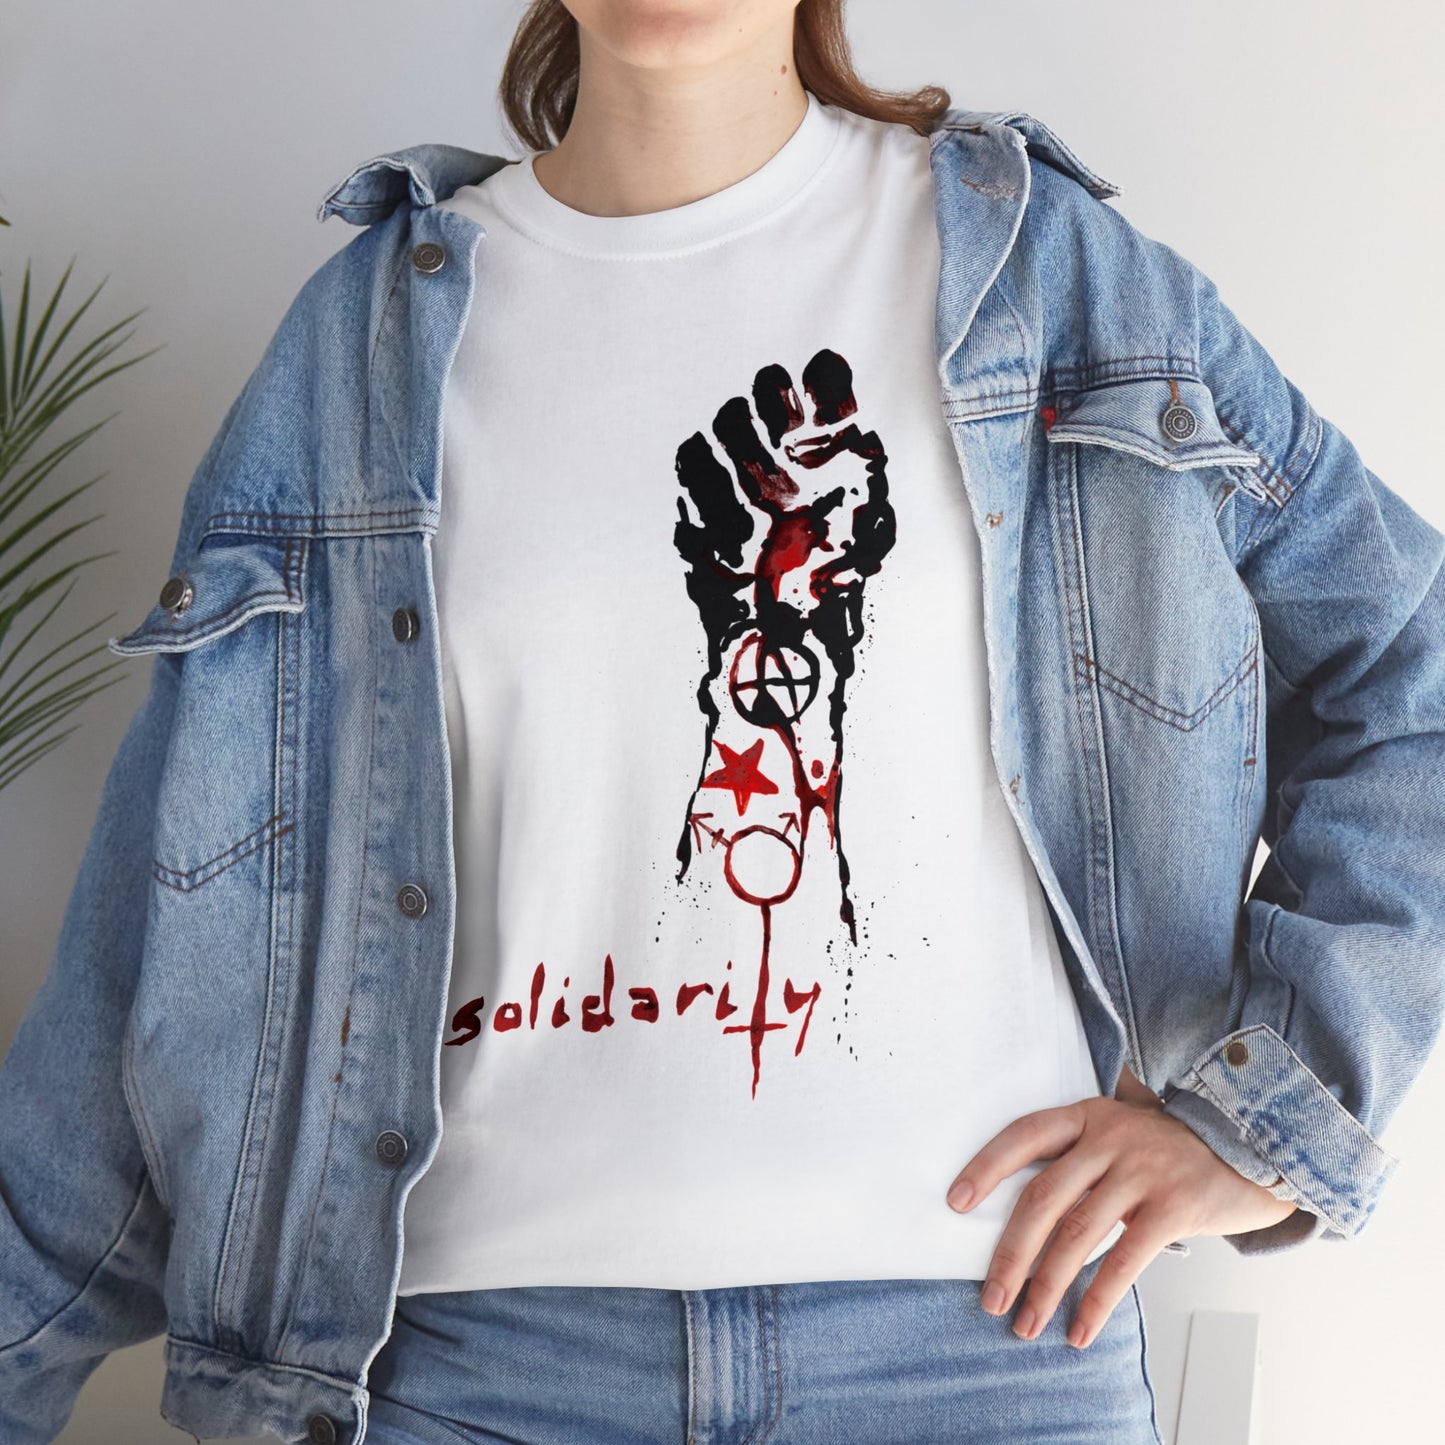 T-shirt: Solidarity-Kim Diaz Holm